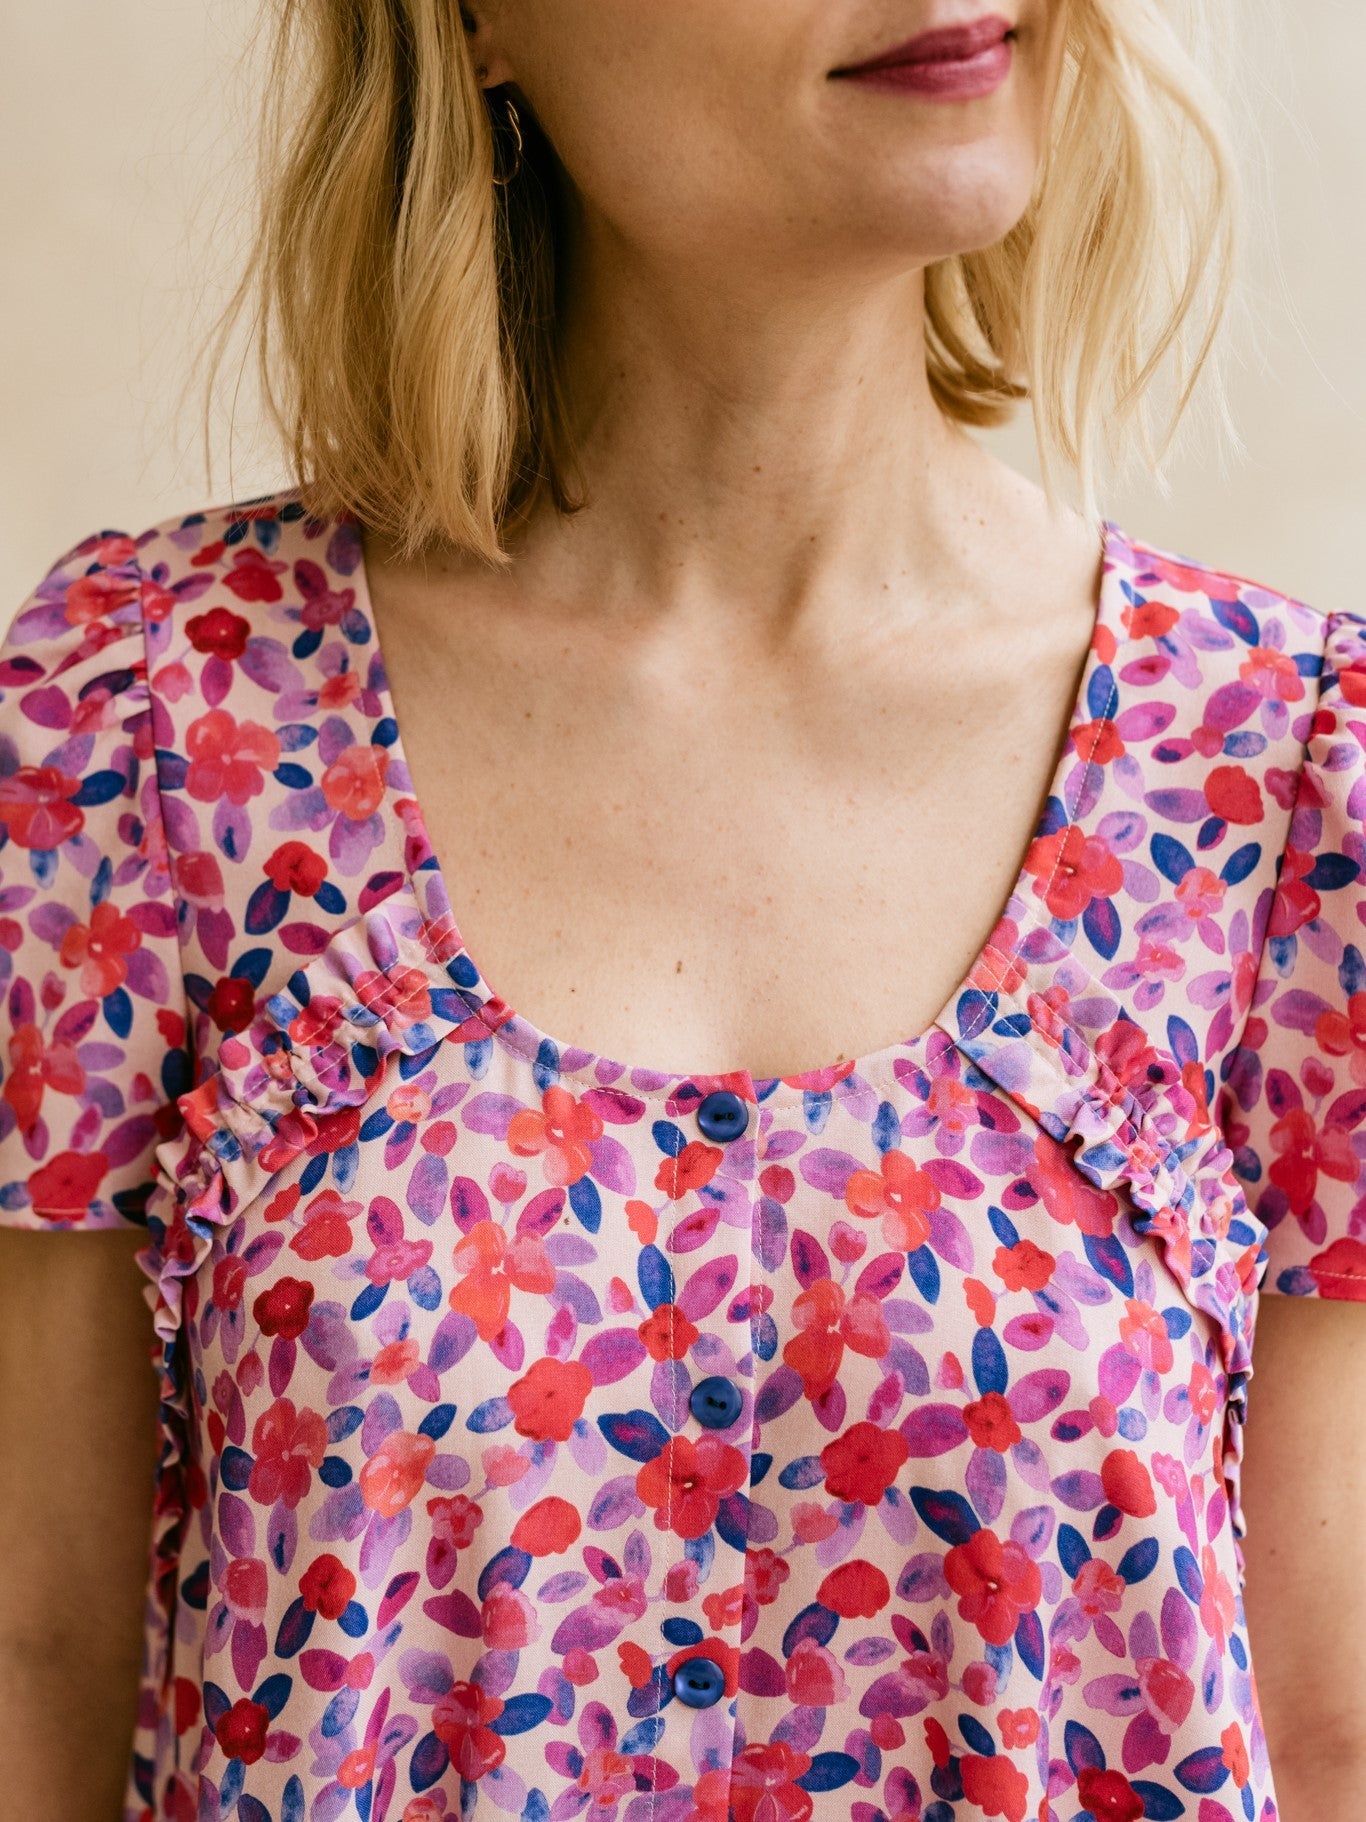 Robe/blouse Bloom - Patron Couture PDF ou Pochette - Joli Lab